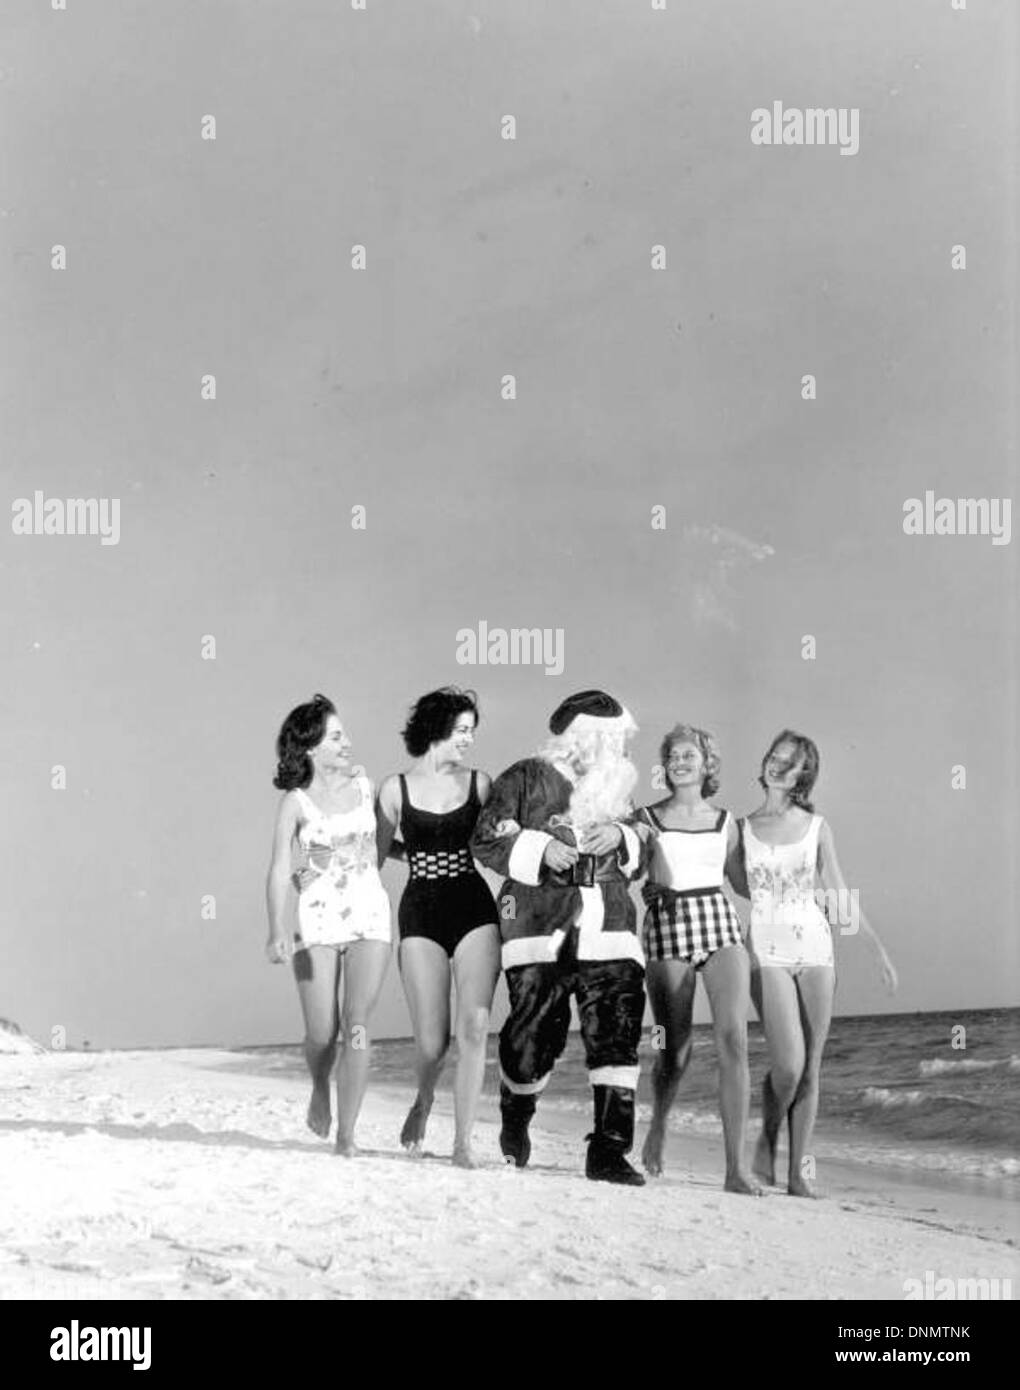 Santa and friends at Panama City Beach, Florida Stock Photo